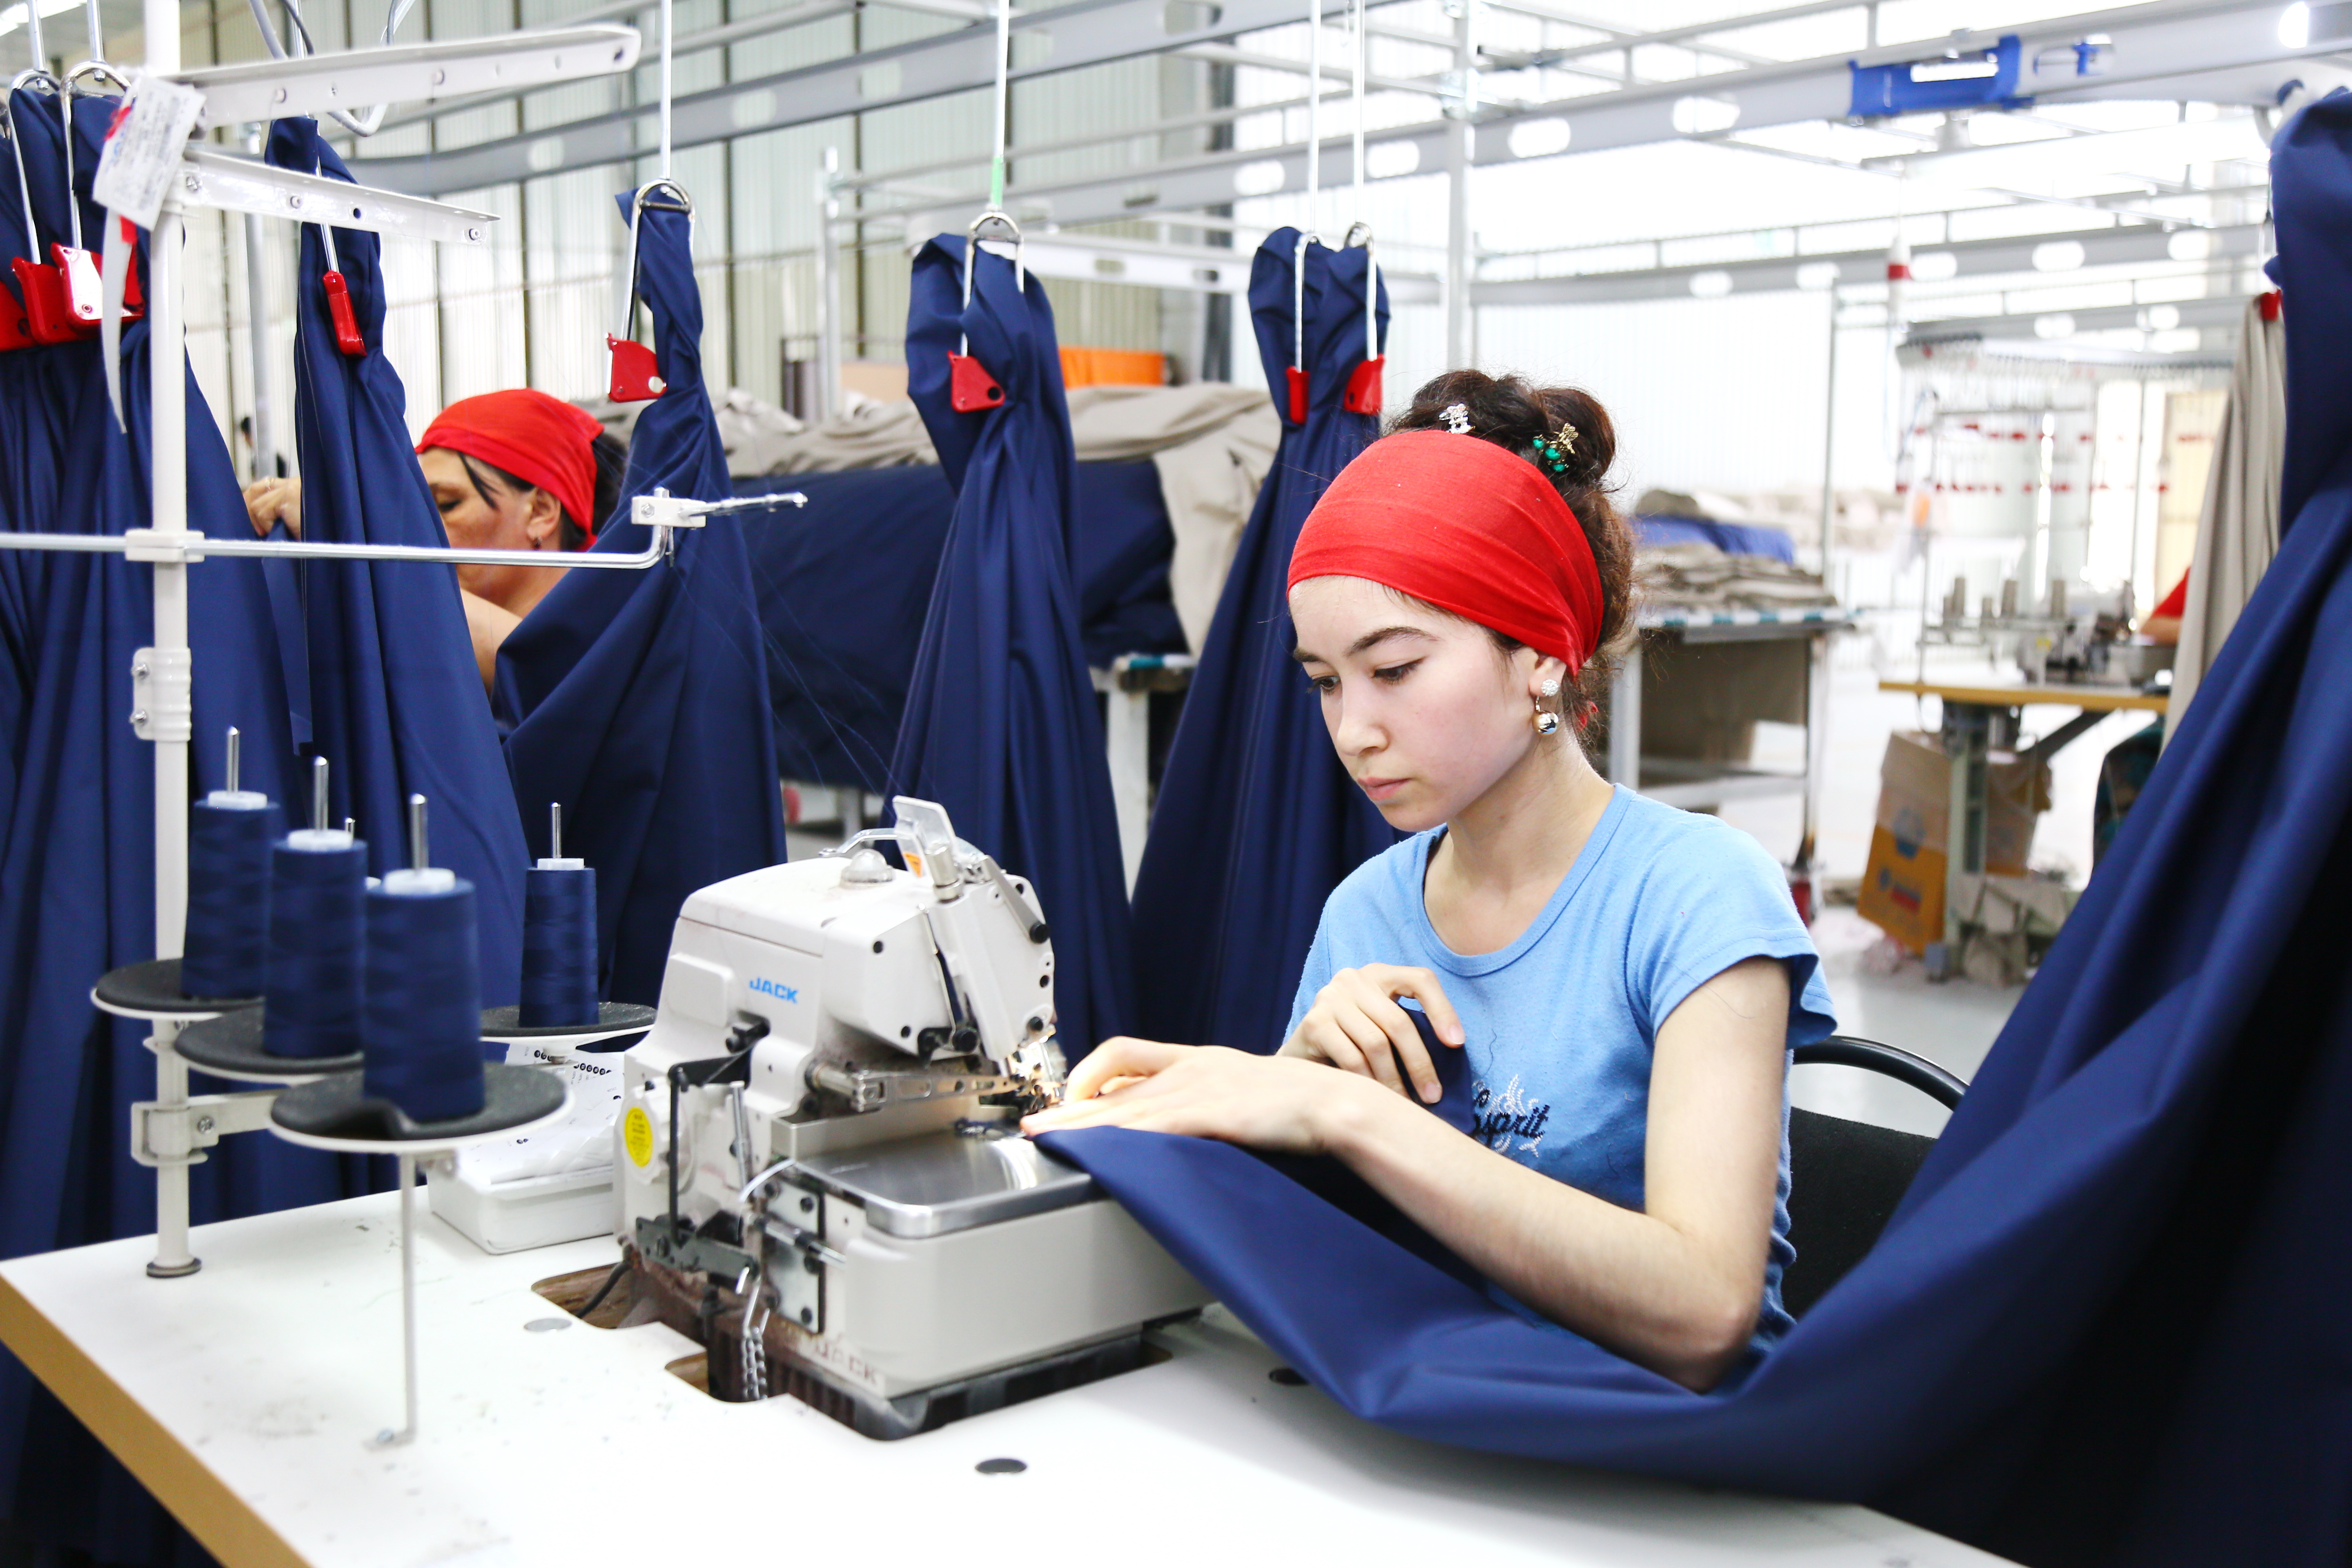 Пром пошив. Швейная фабрика. Текстильная промышленность. Текстильная фабрика. Фабрика по пошиву одежды.